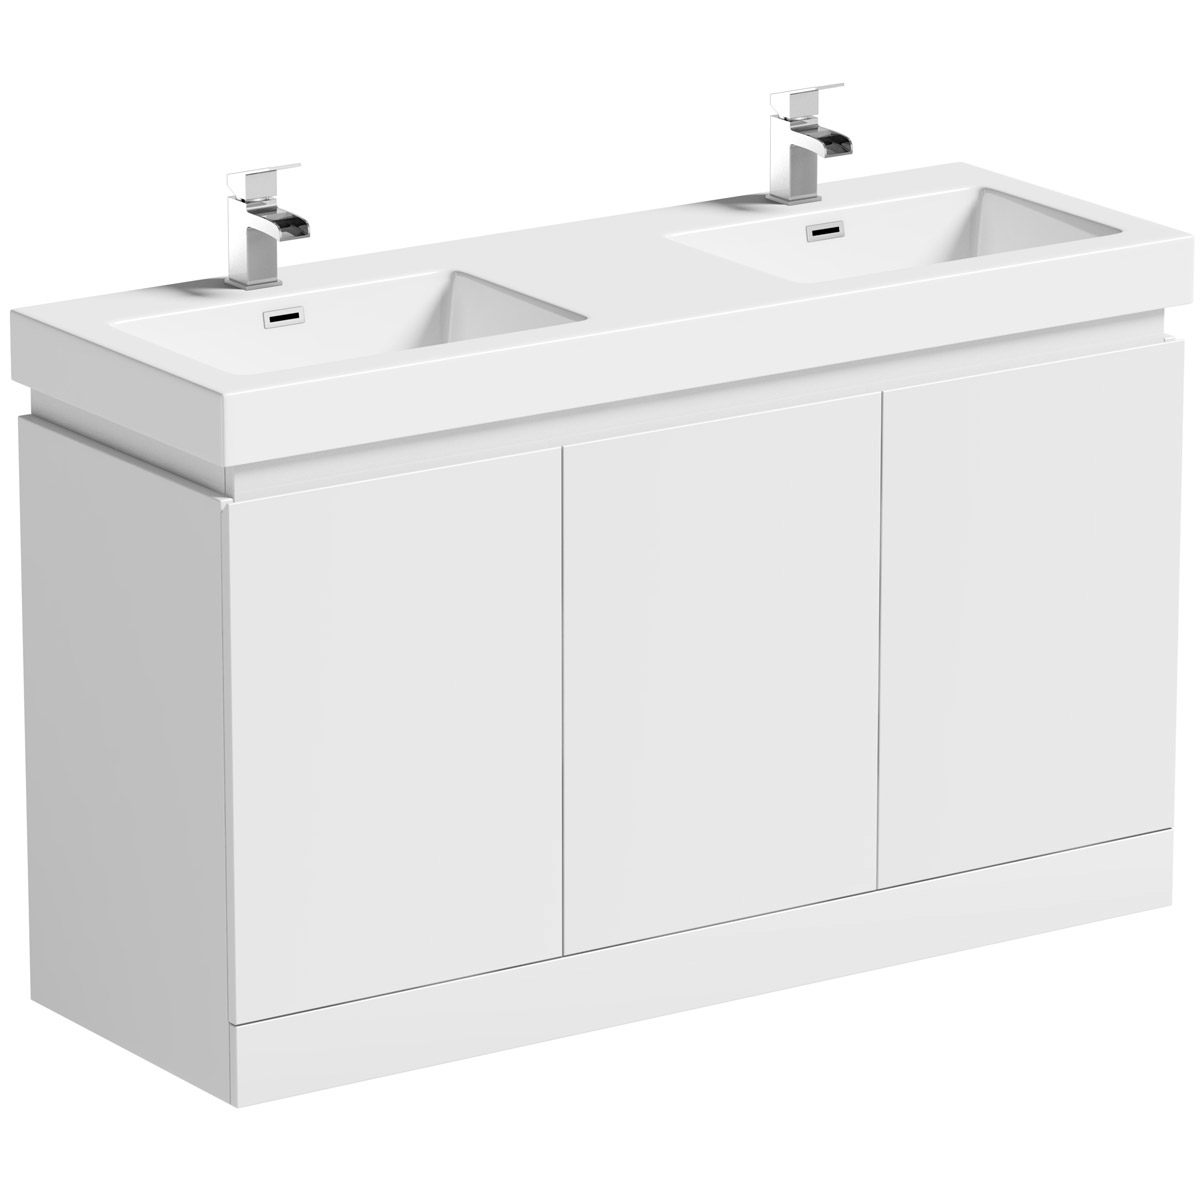 Mode Hardy White Floorstanding Double, Double Bathroom Vanity Units